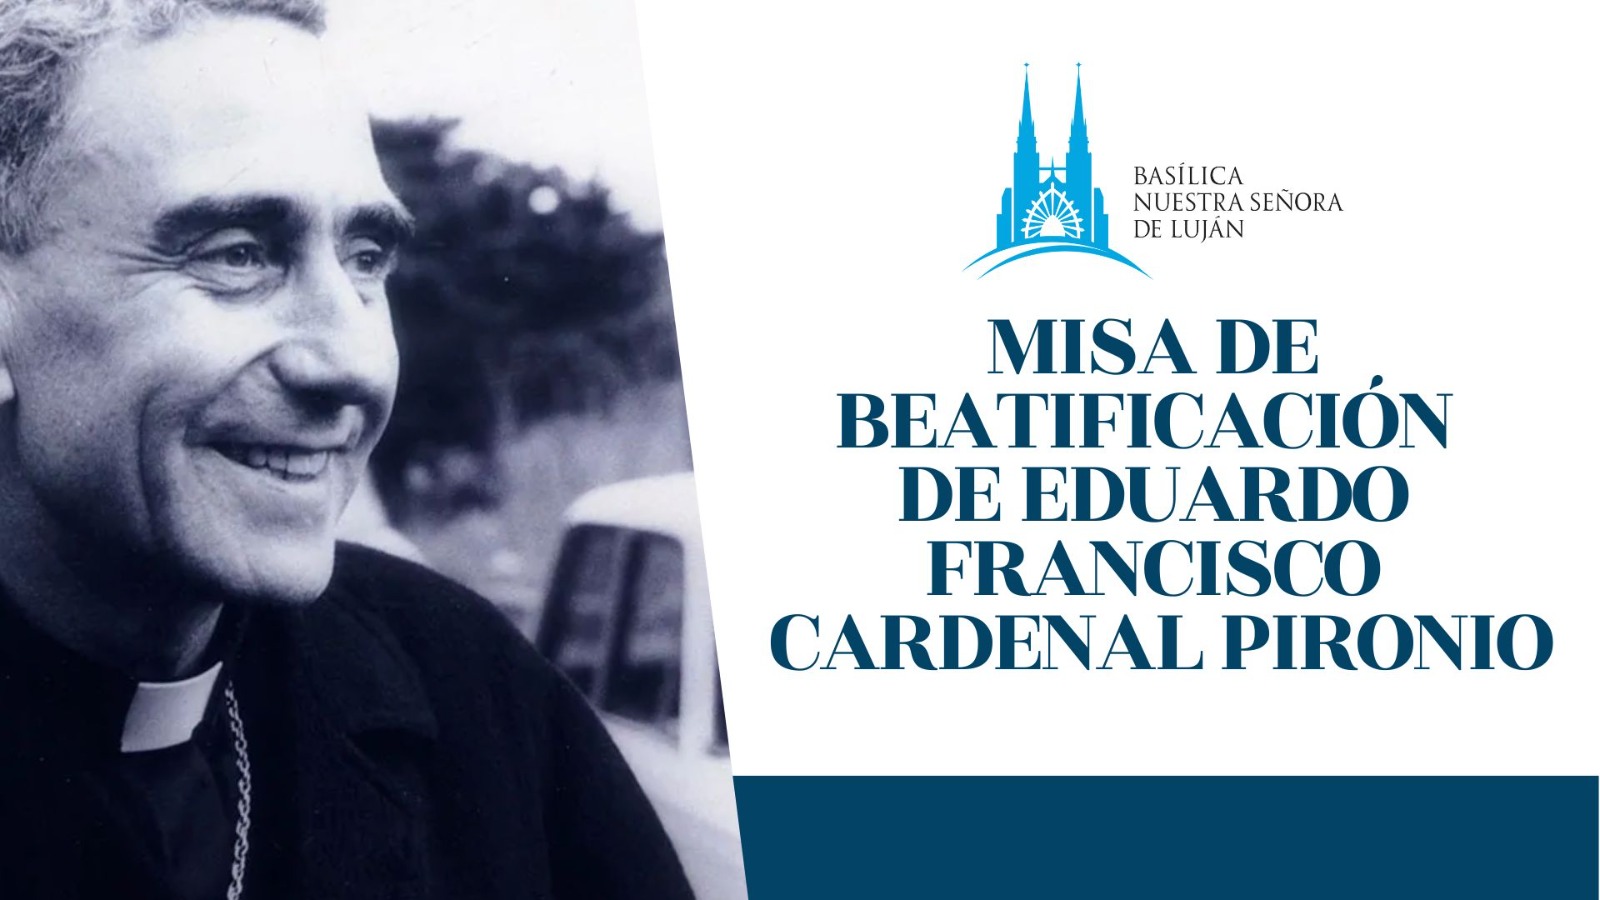 Misa de Beatificación de Eduardo Francisco Cardenal Pironio